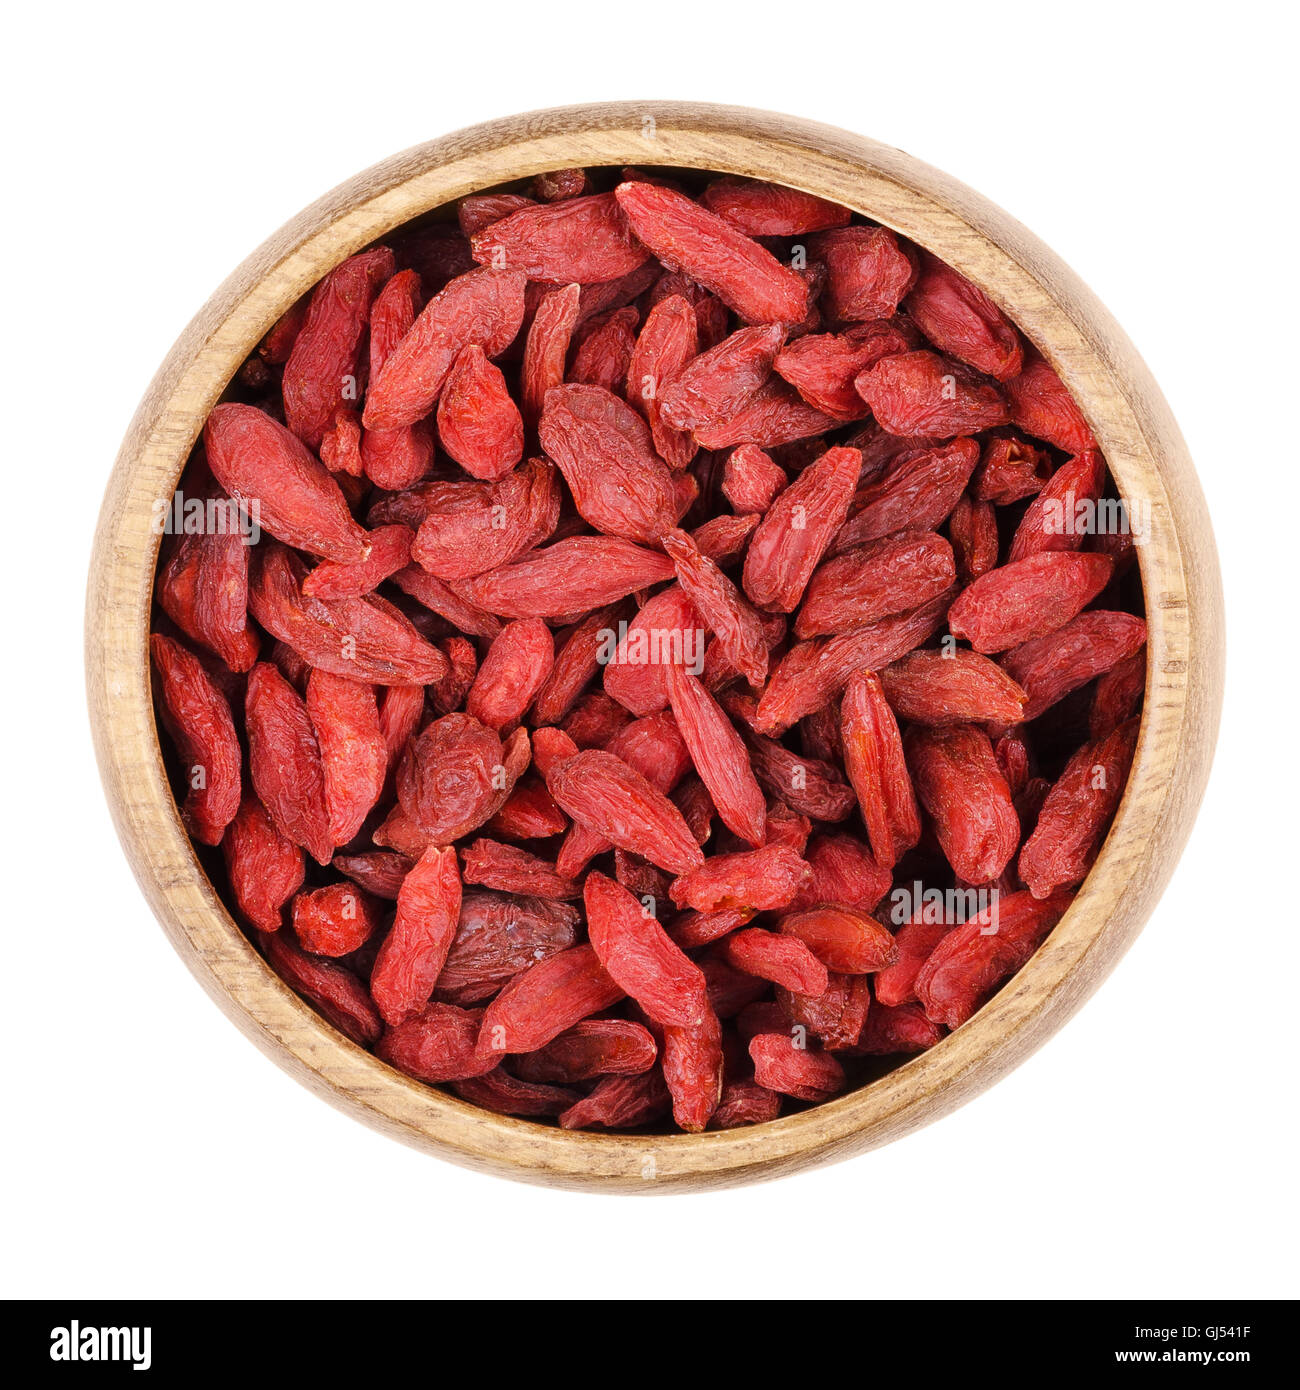 Les baies de goji dans un bol sur fond blanc, également appelé wolfberry. Fruits rouges séchées et graines de Lycium barbarum. Banque D'Images